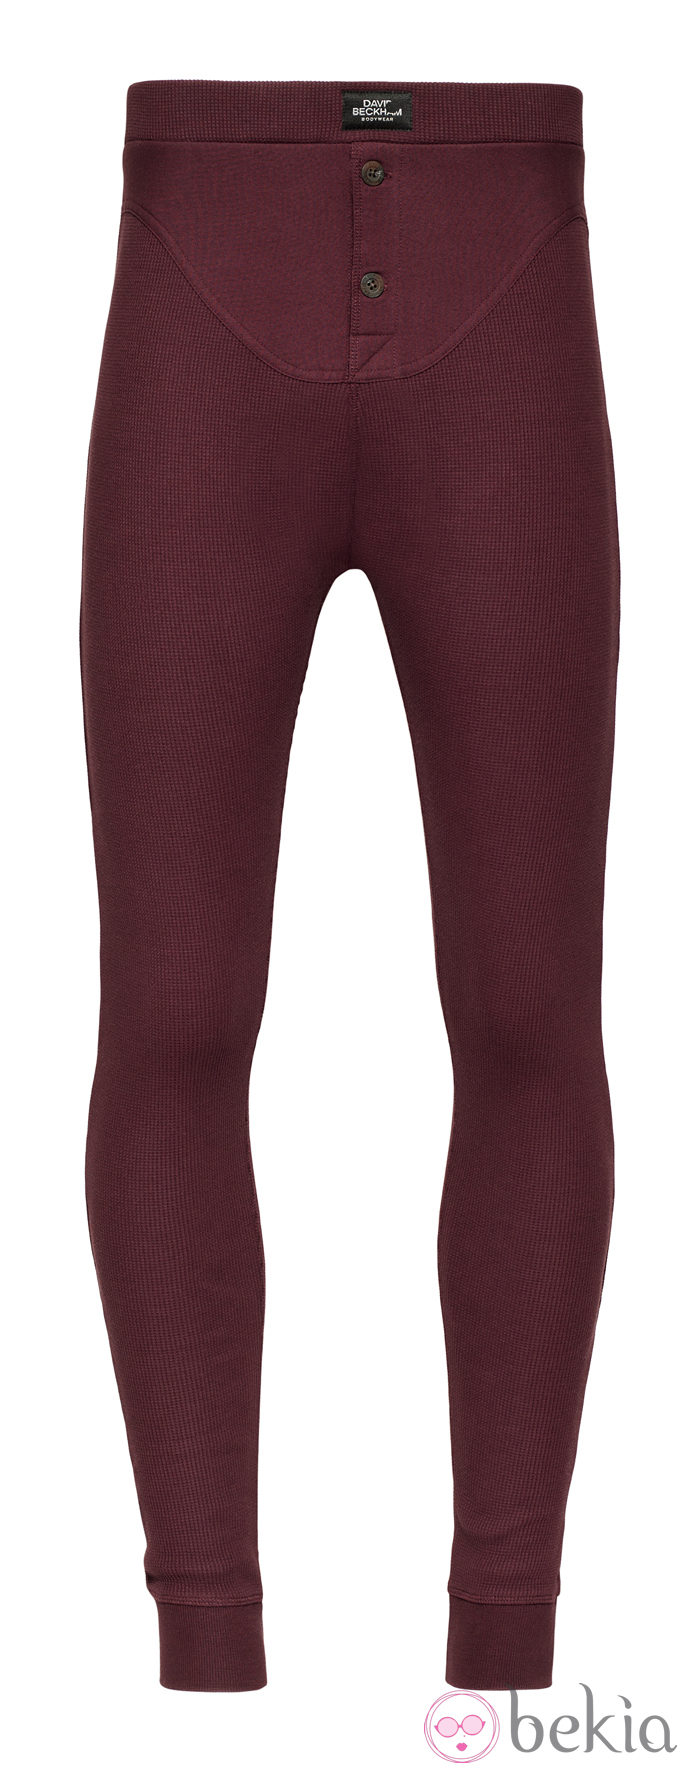 Pantalón rojo de la colección otoño/invierno 2013/2014 Bodywear de David Beckham para H&M